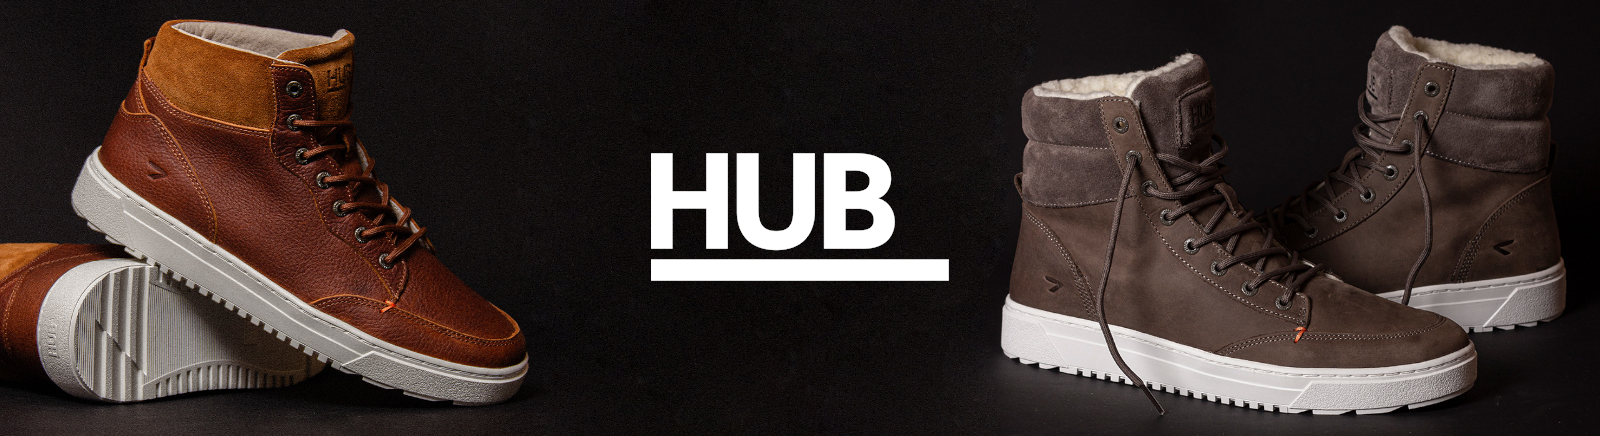 HUB Markenschuhe online kaufen im Prange Schuhe Shop